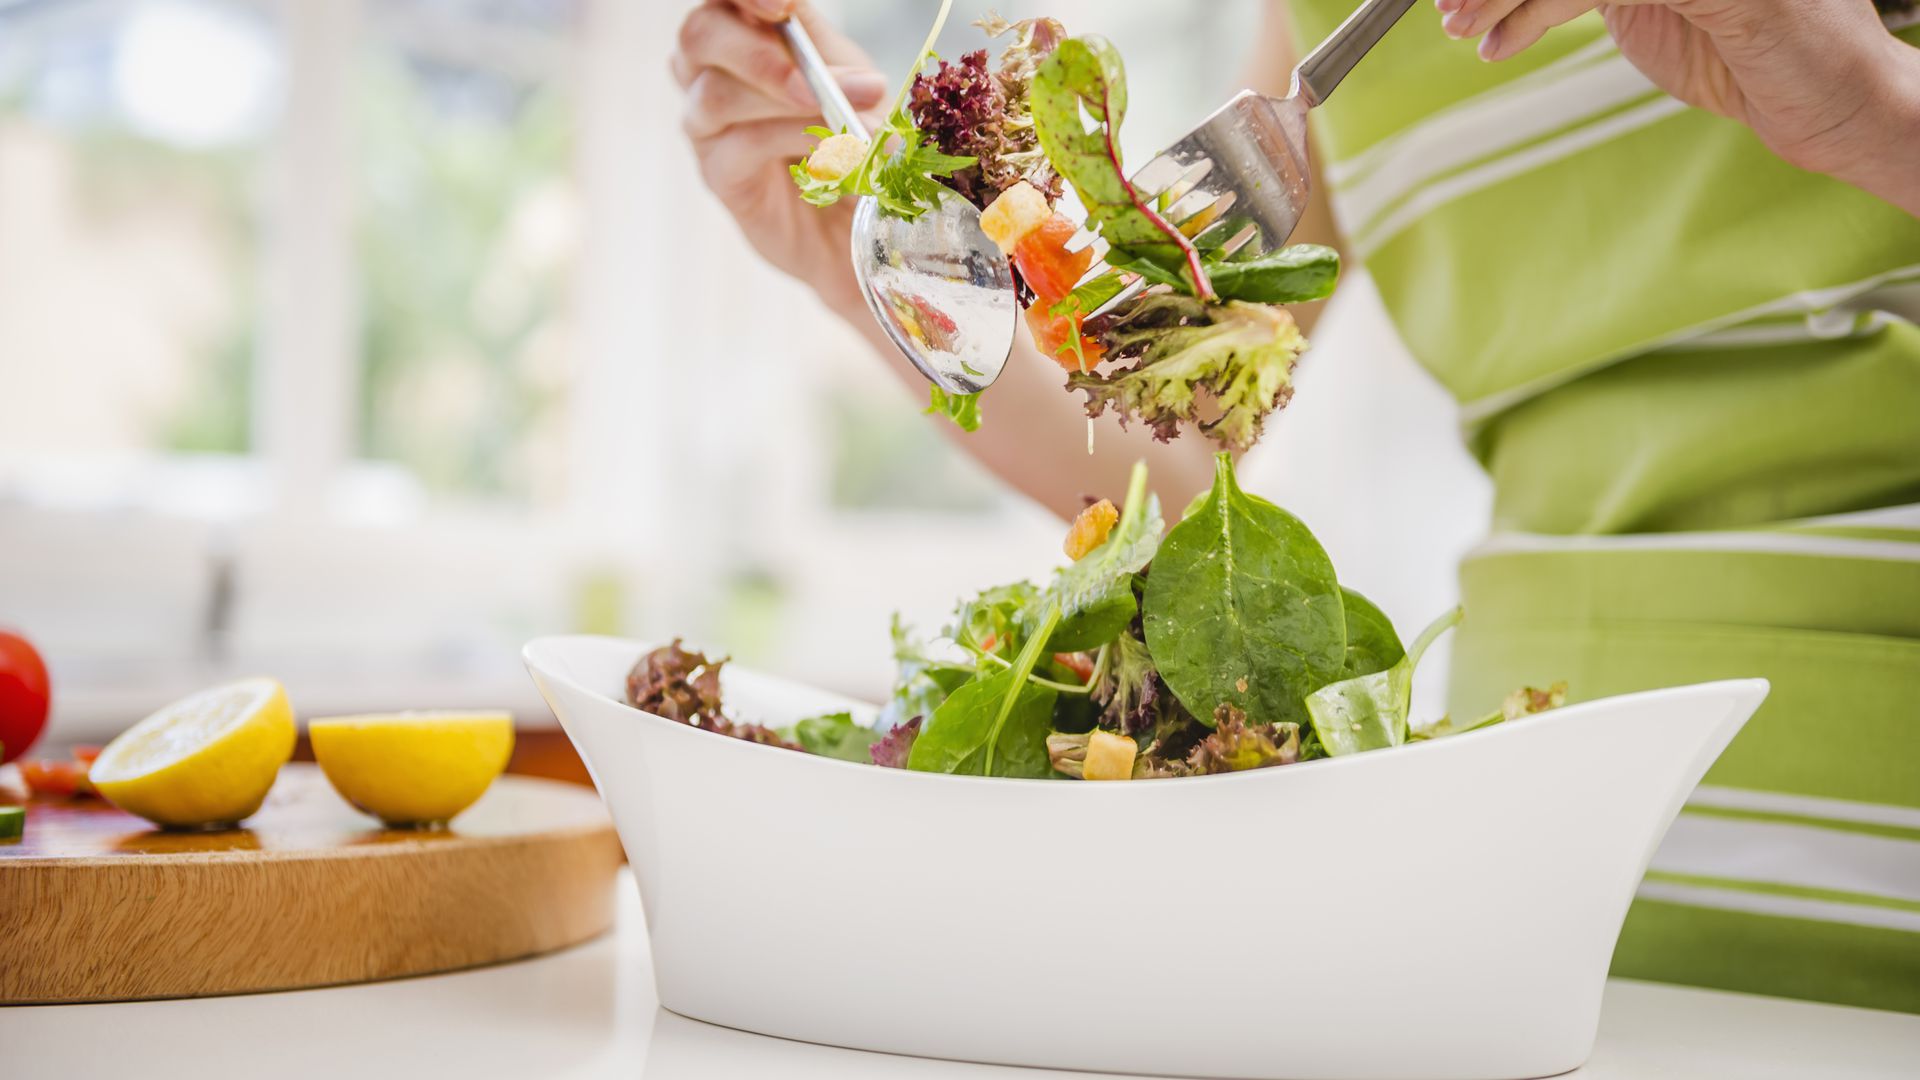 Las ensaladas envasadas podrían poner en riesgo tu salud